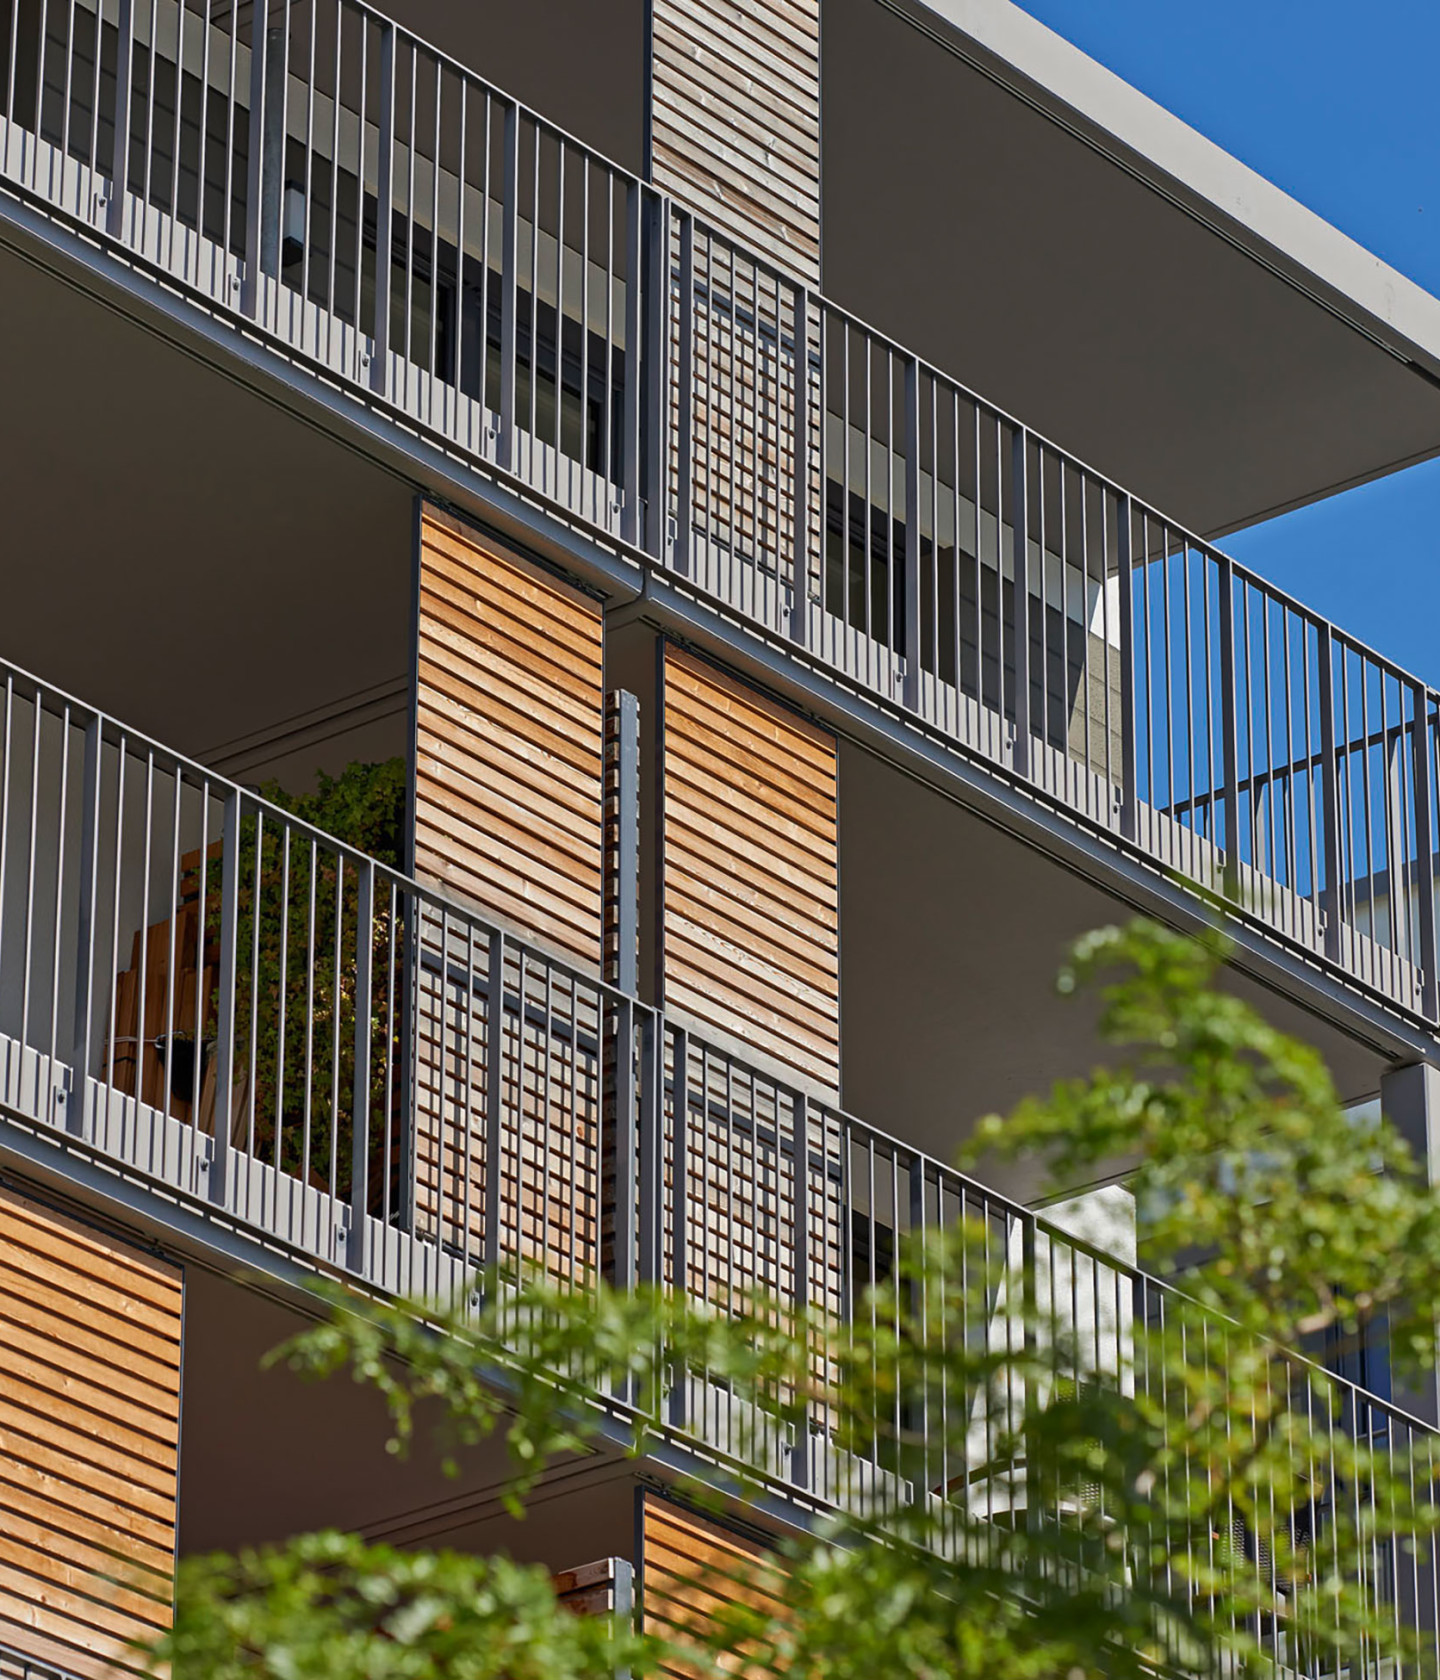 Foto: Balkonfront Donnersberger Höfe mit Holzelementen und viel Grün